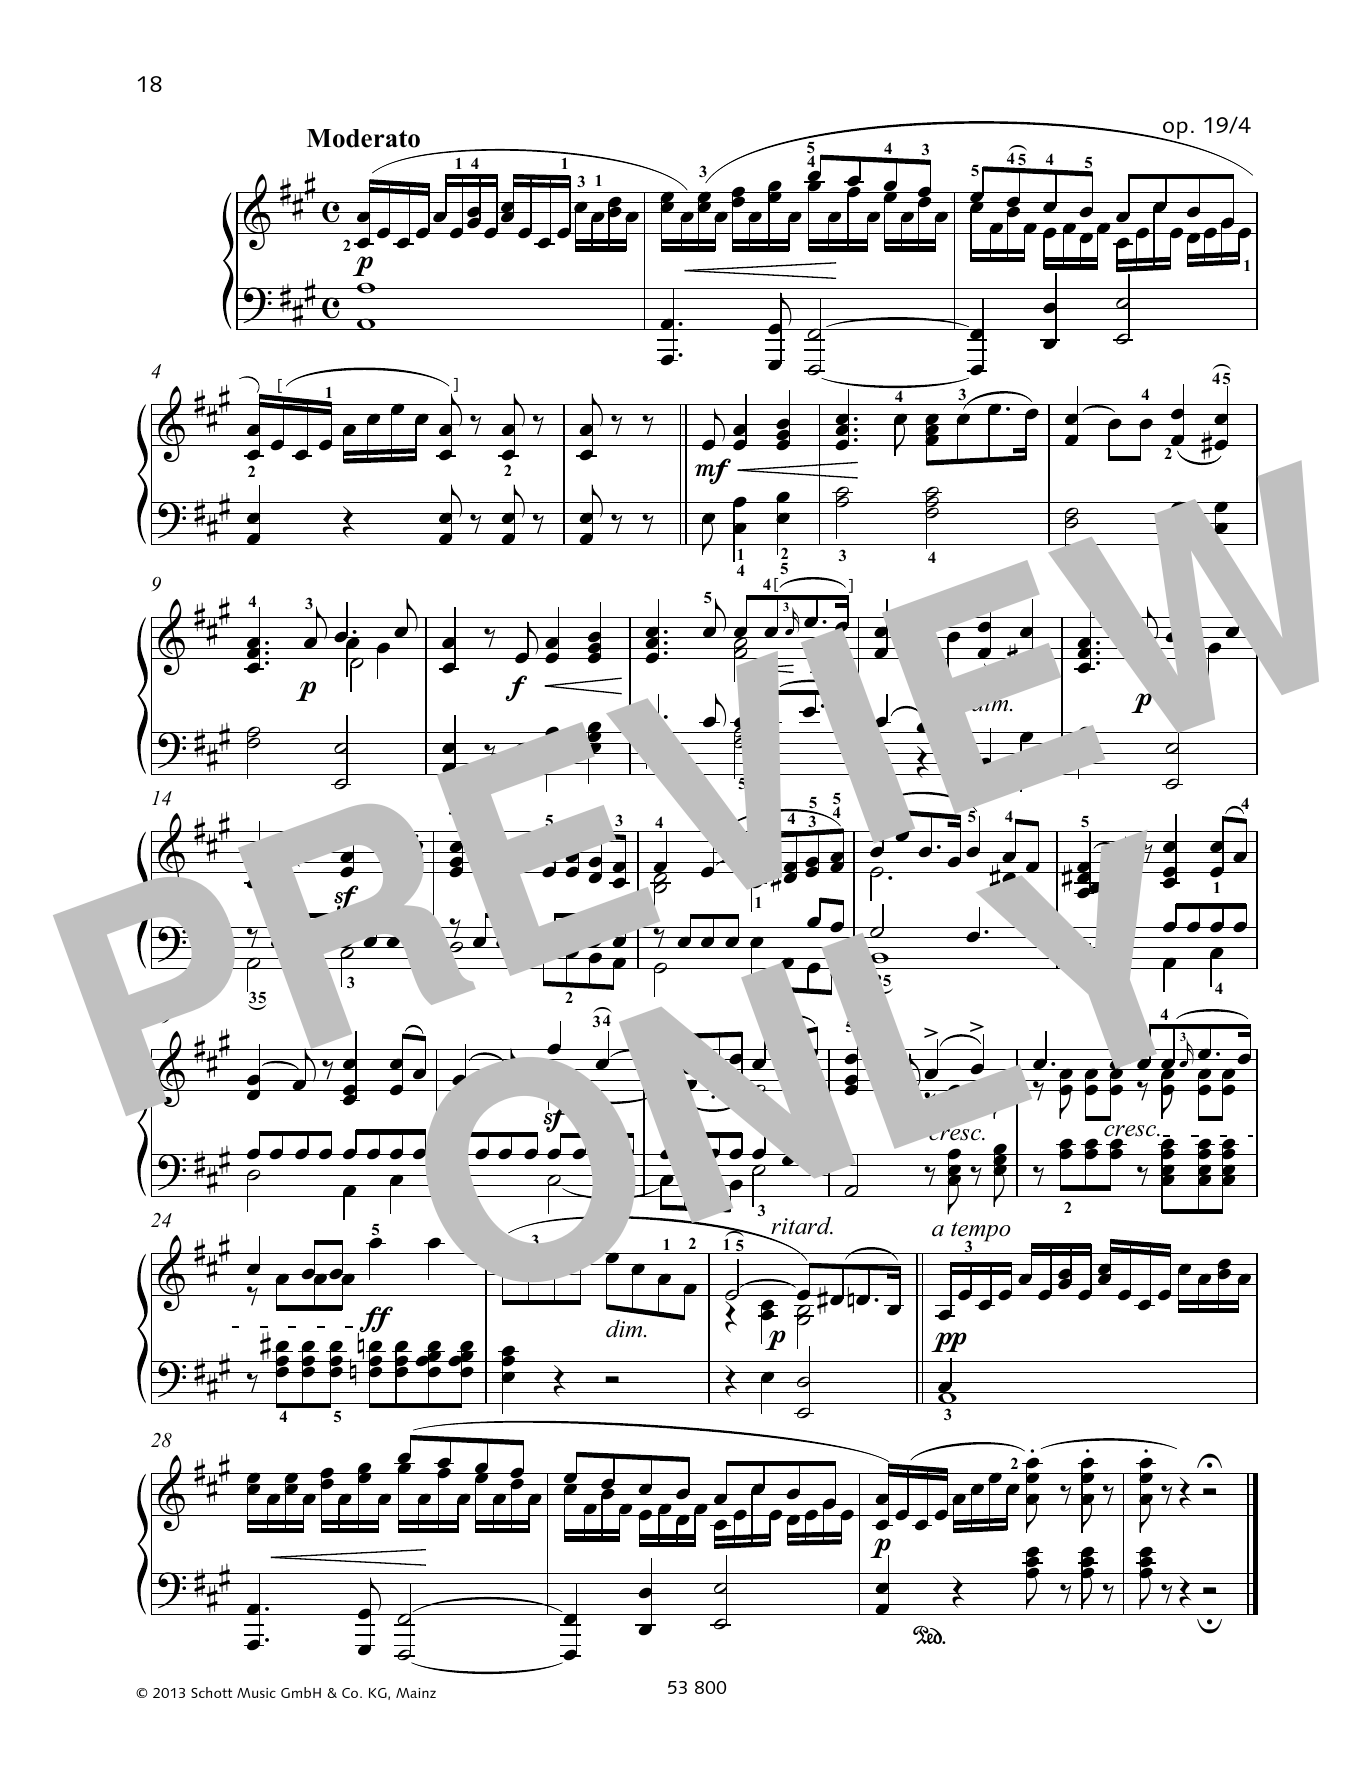 Download Felix Mendelssohn Bartholdy Moderato Sheet Music